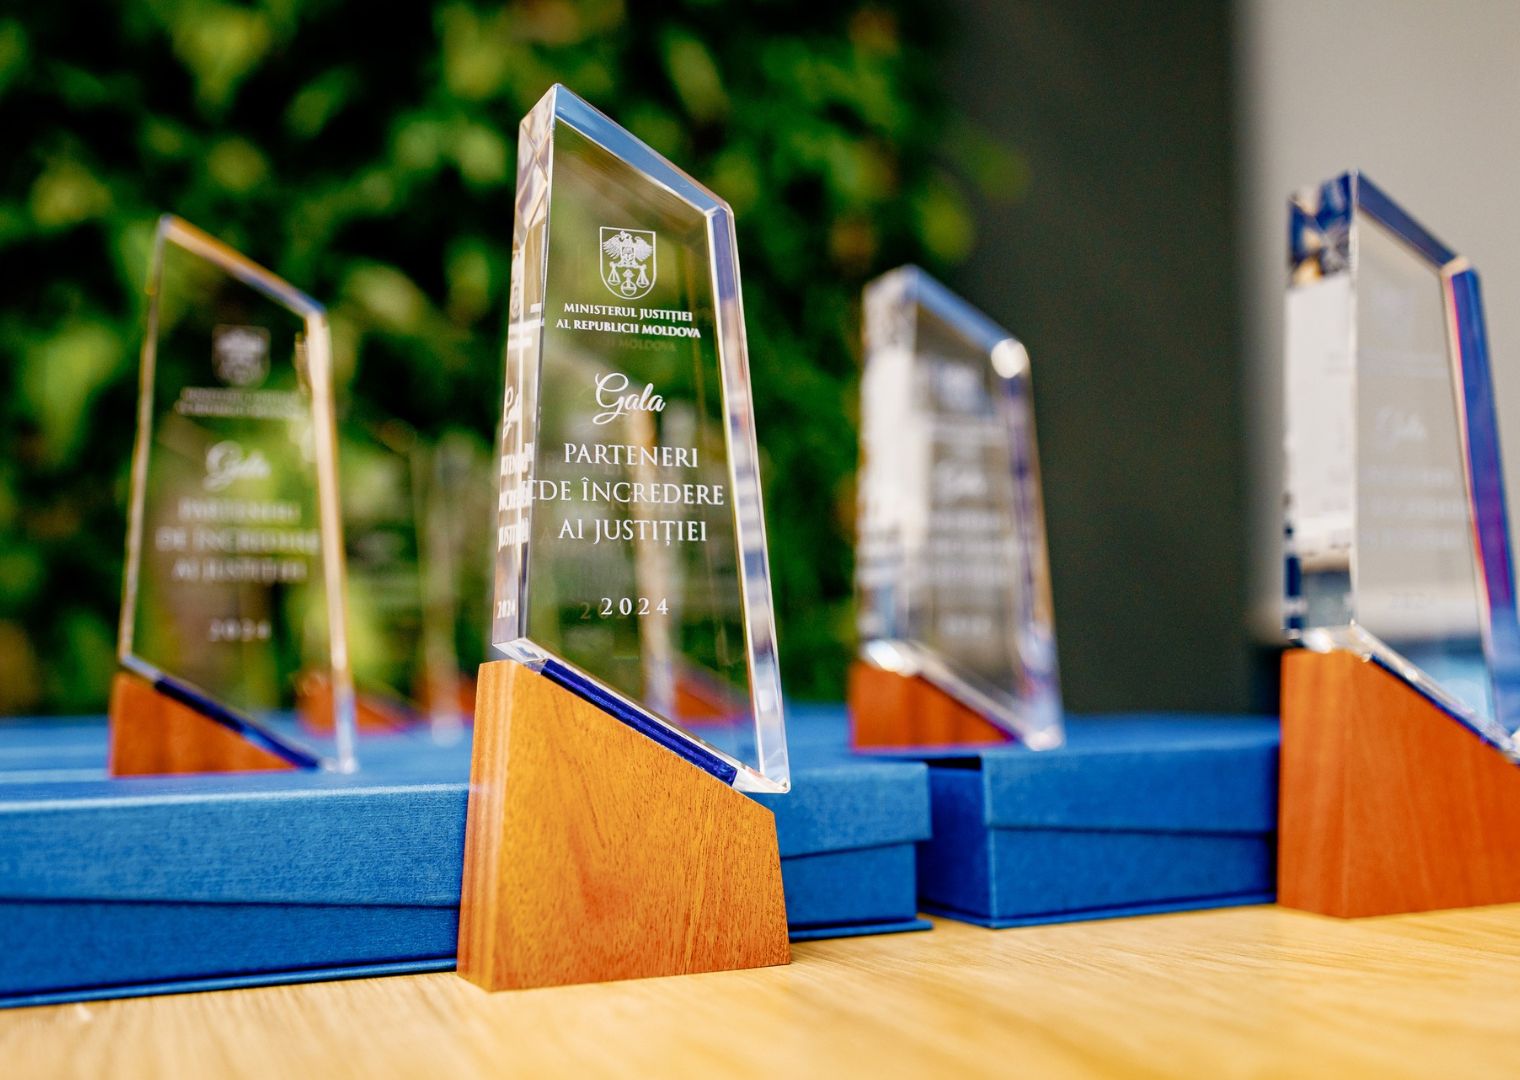 Fundația Regina Pacis distinsă cu premiul acordat de Ministerul Justiției la Gala „Parteneri de încredere ai justiției”